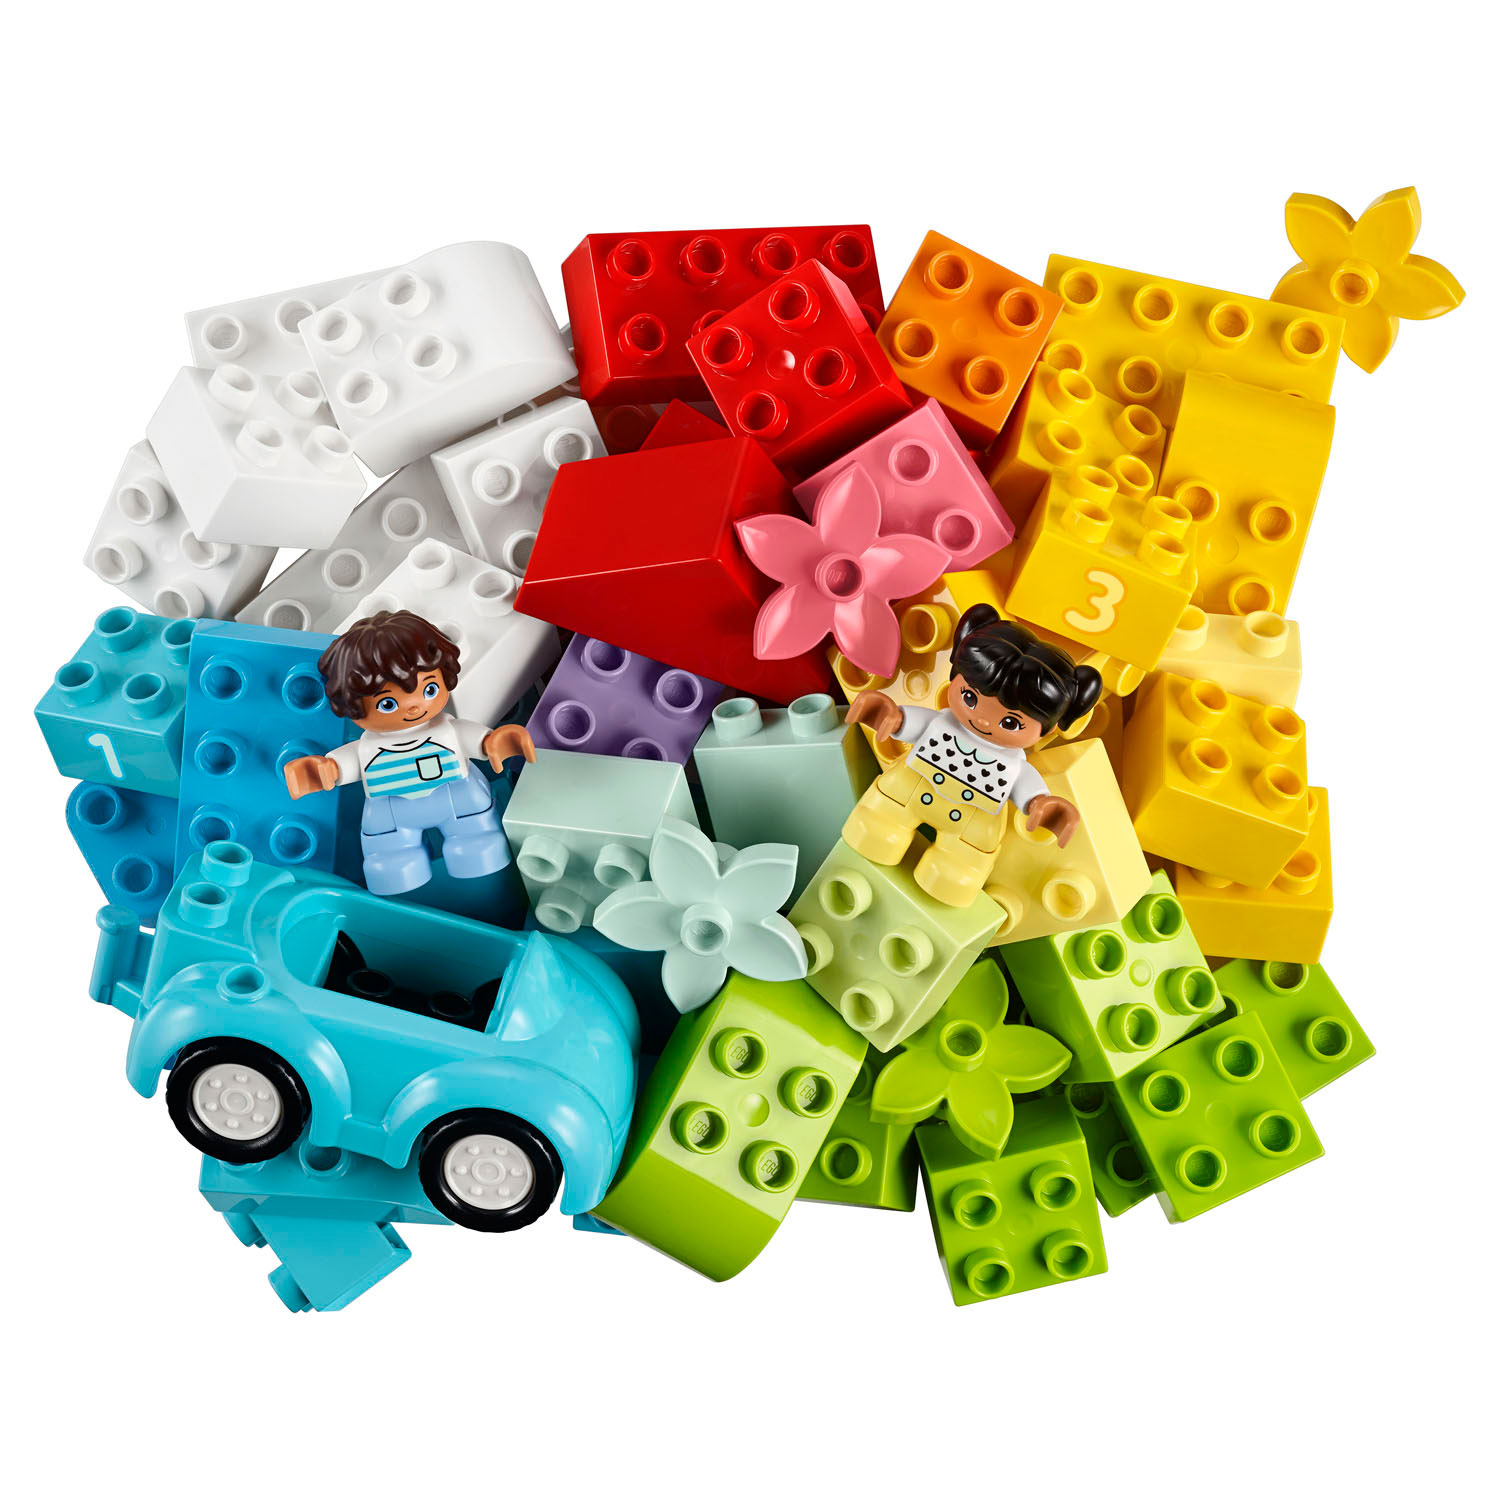 LEGO Duplo 10913 Boîte de rangement avec blocs de construction